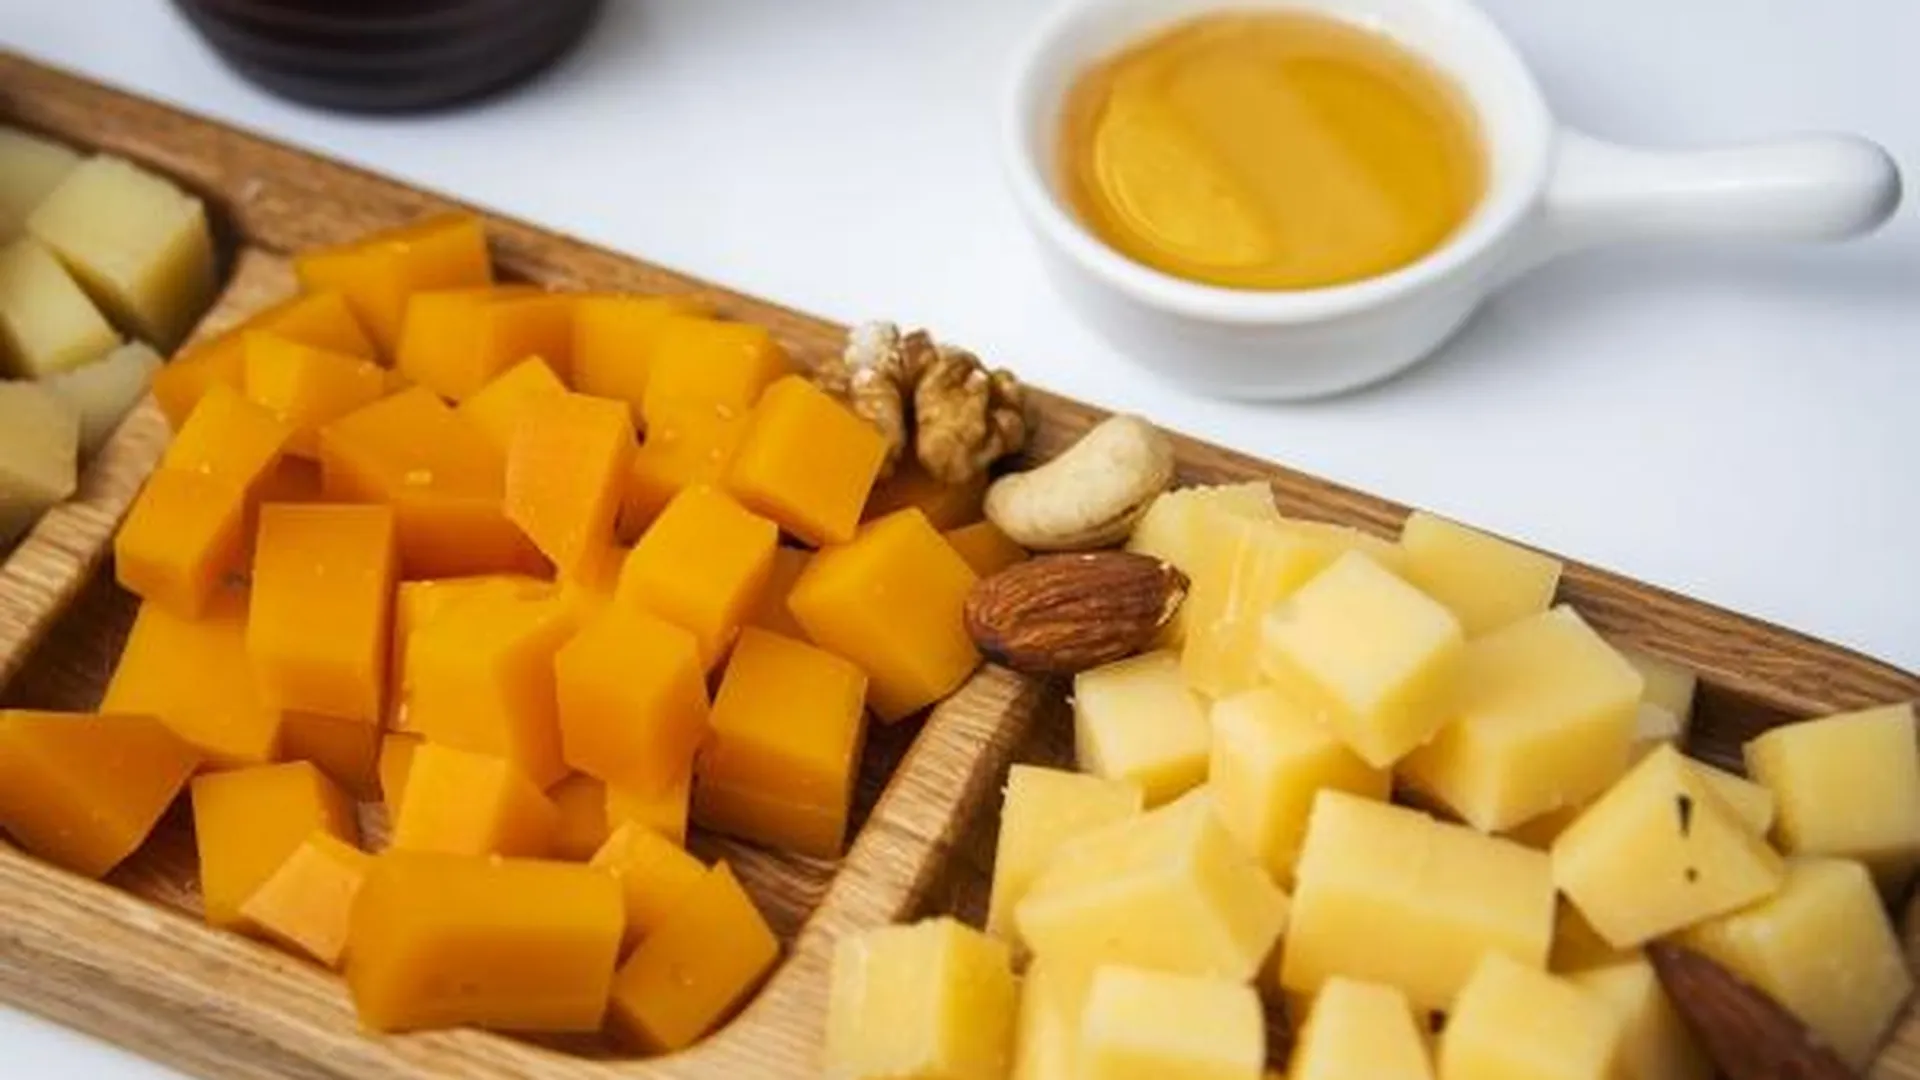 Фармаколог Эдигер рекомендовал употреблять твердые сорта сыра для снижения тревожности